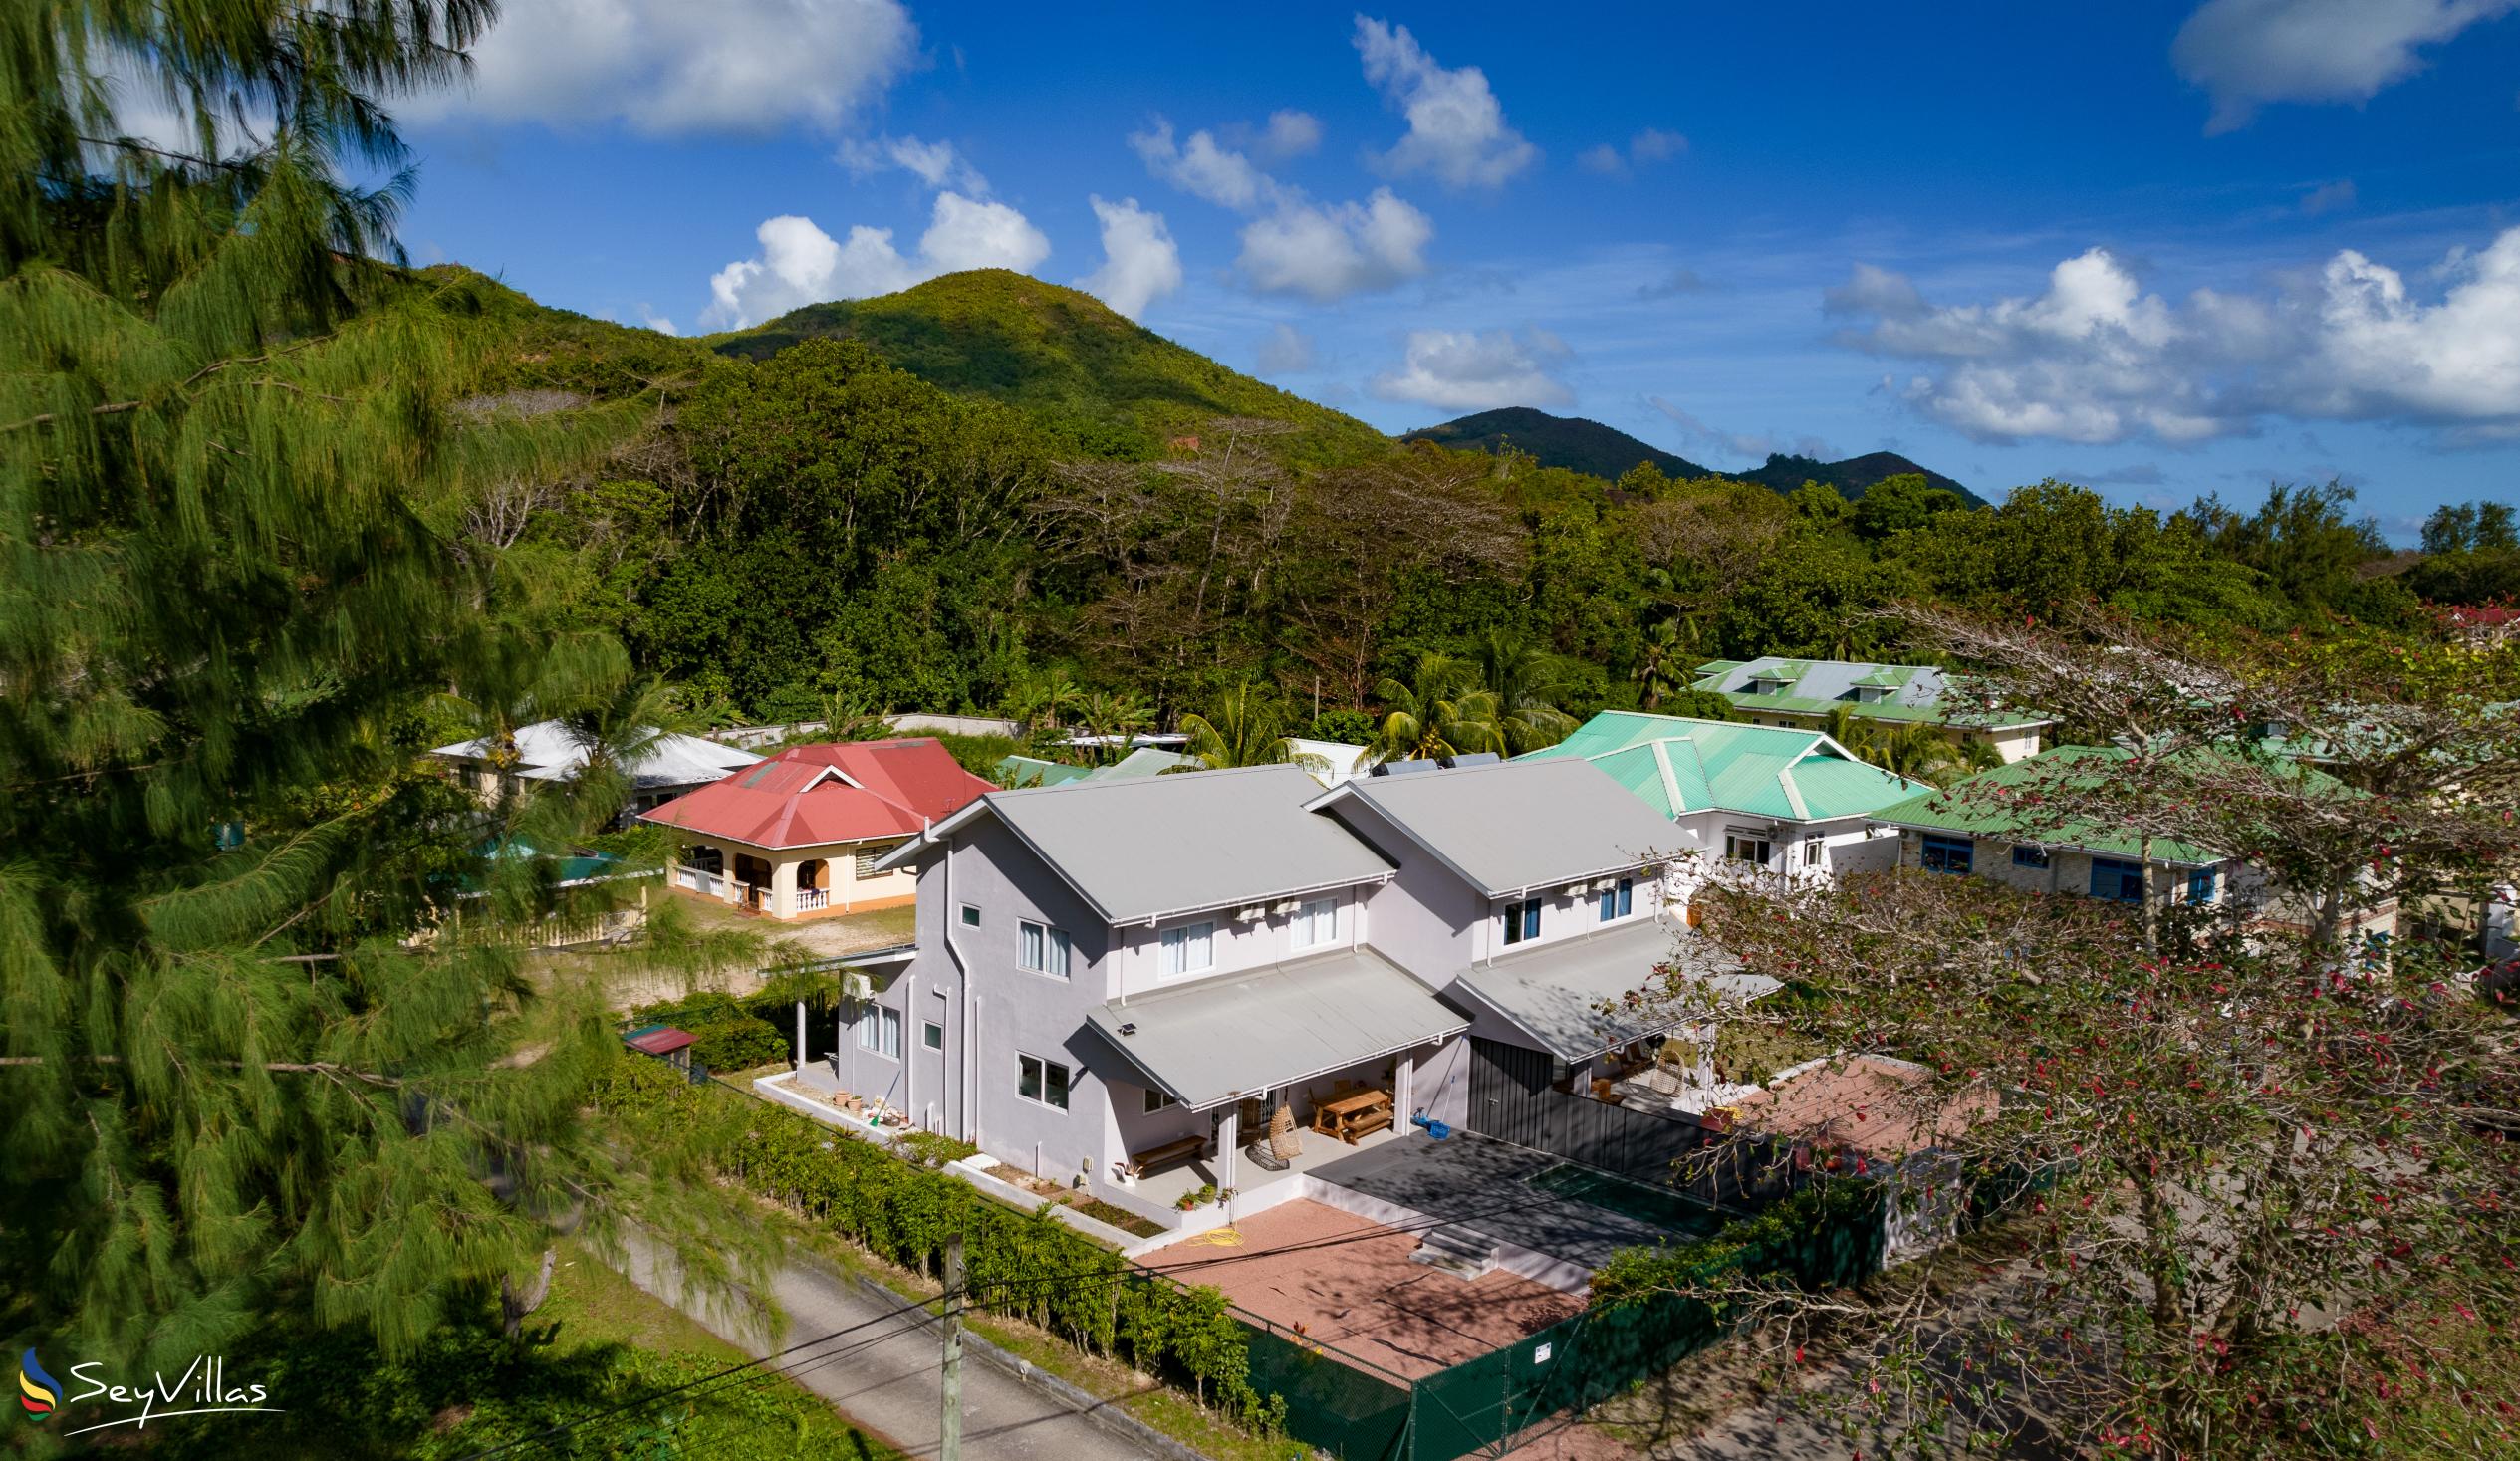 Foto 15: Maison Marie-Jeanne - Esterno - Praslin (Seychelles)